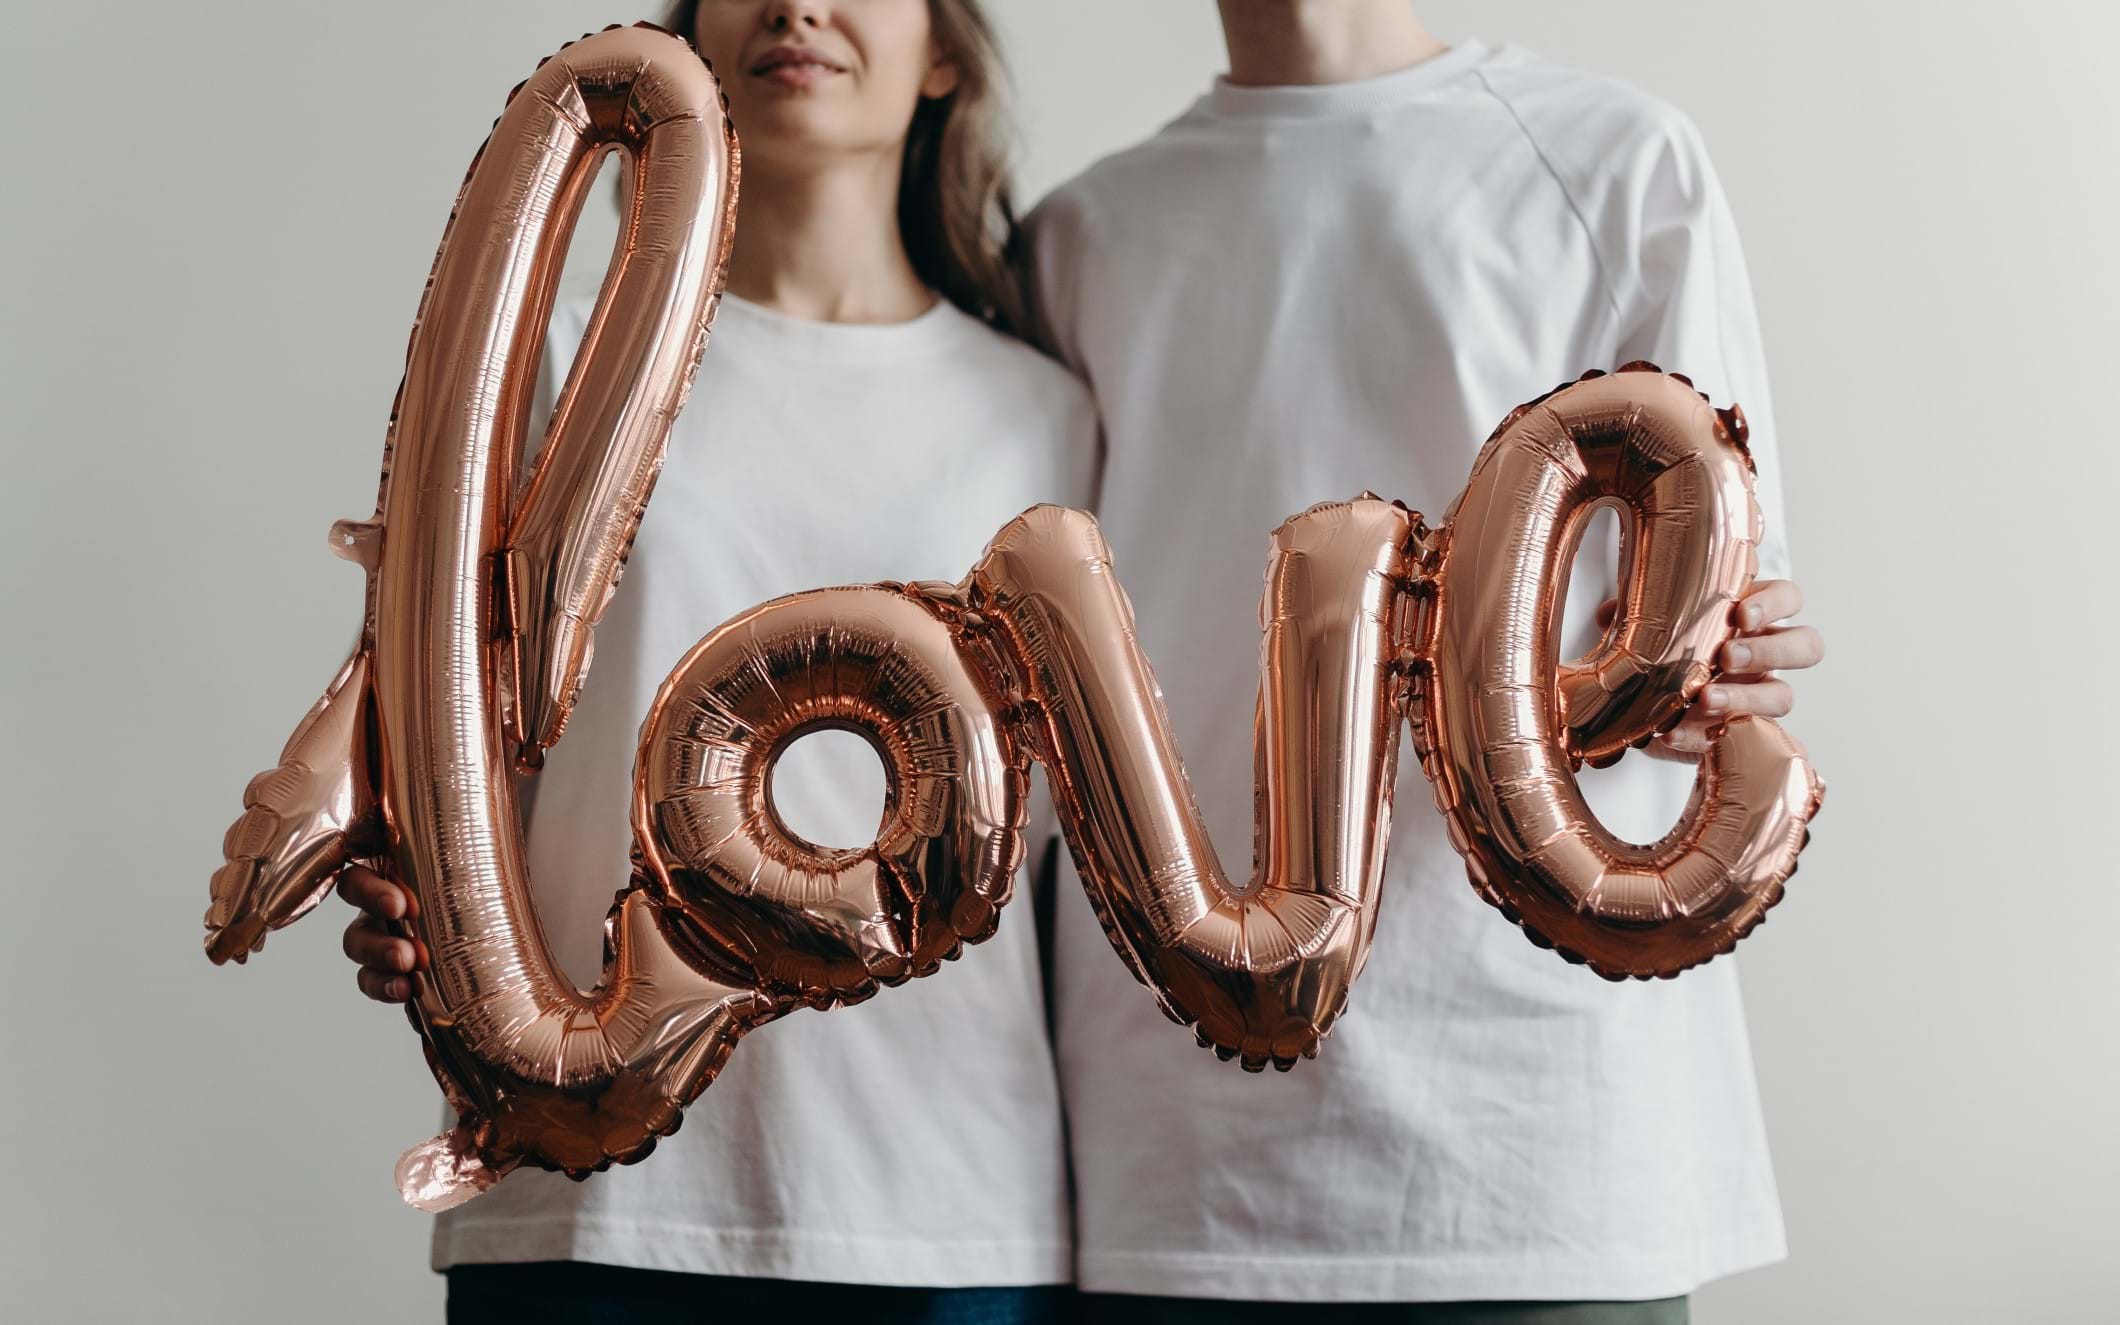 A couple holding a 'love' balloon